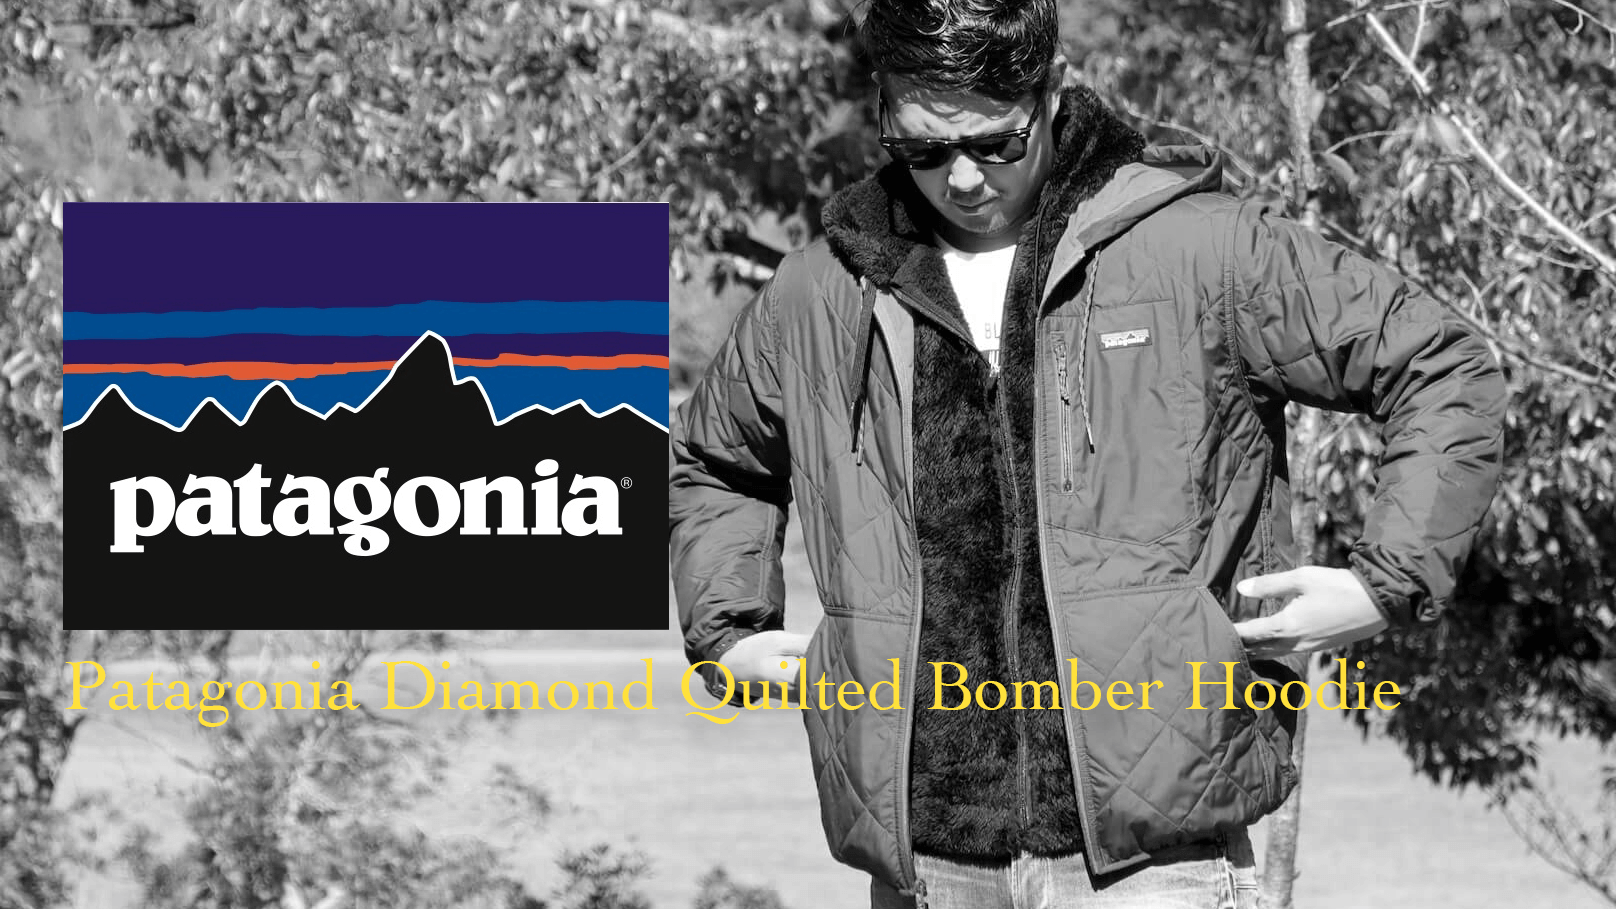 Patagoniaのダイアモンド・キルト・ボマー・フーディはちょい出に最適